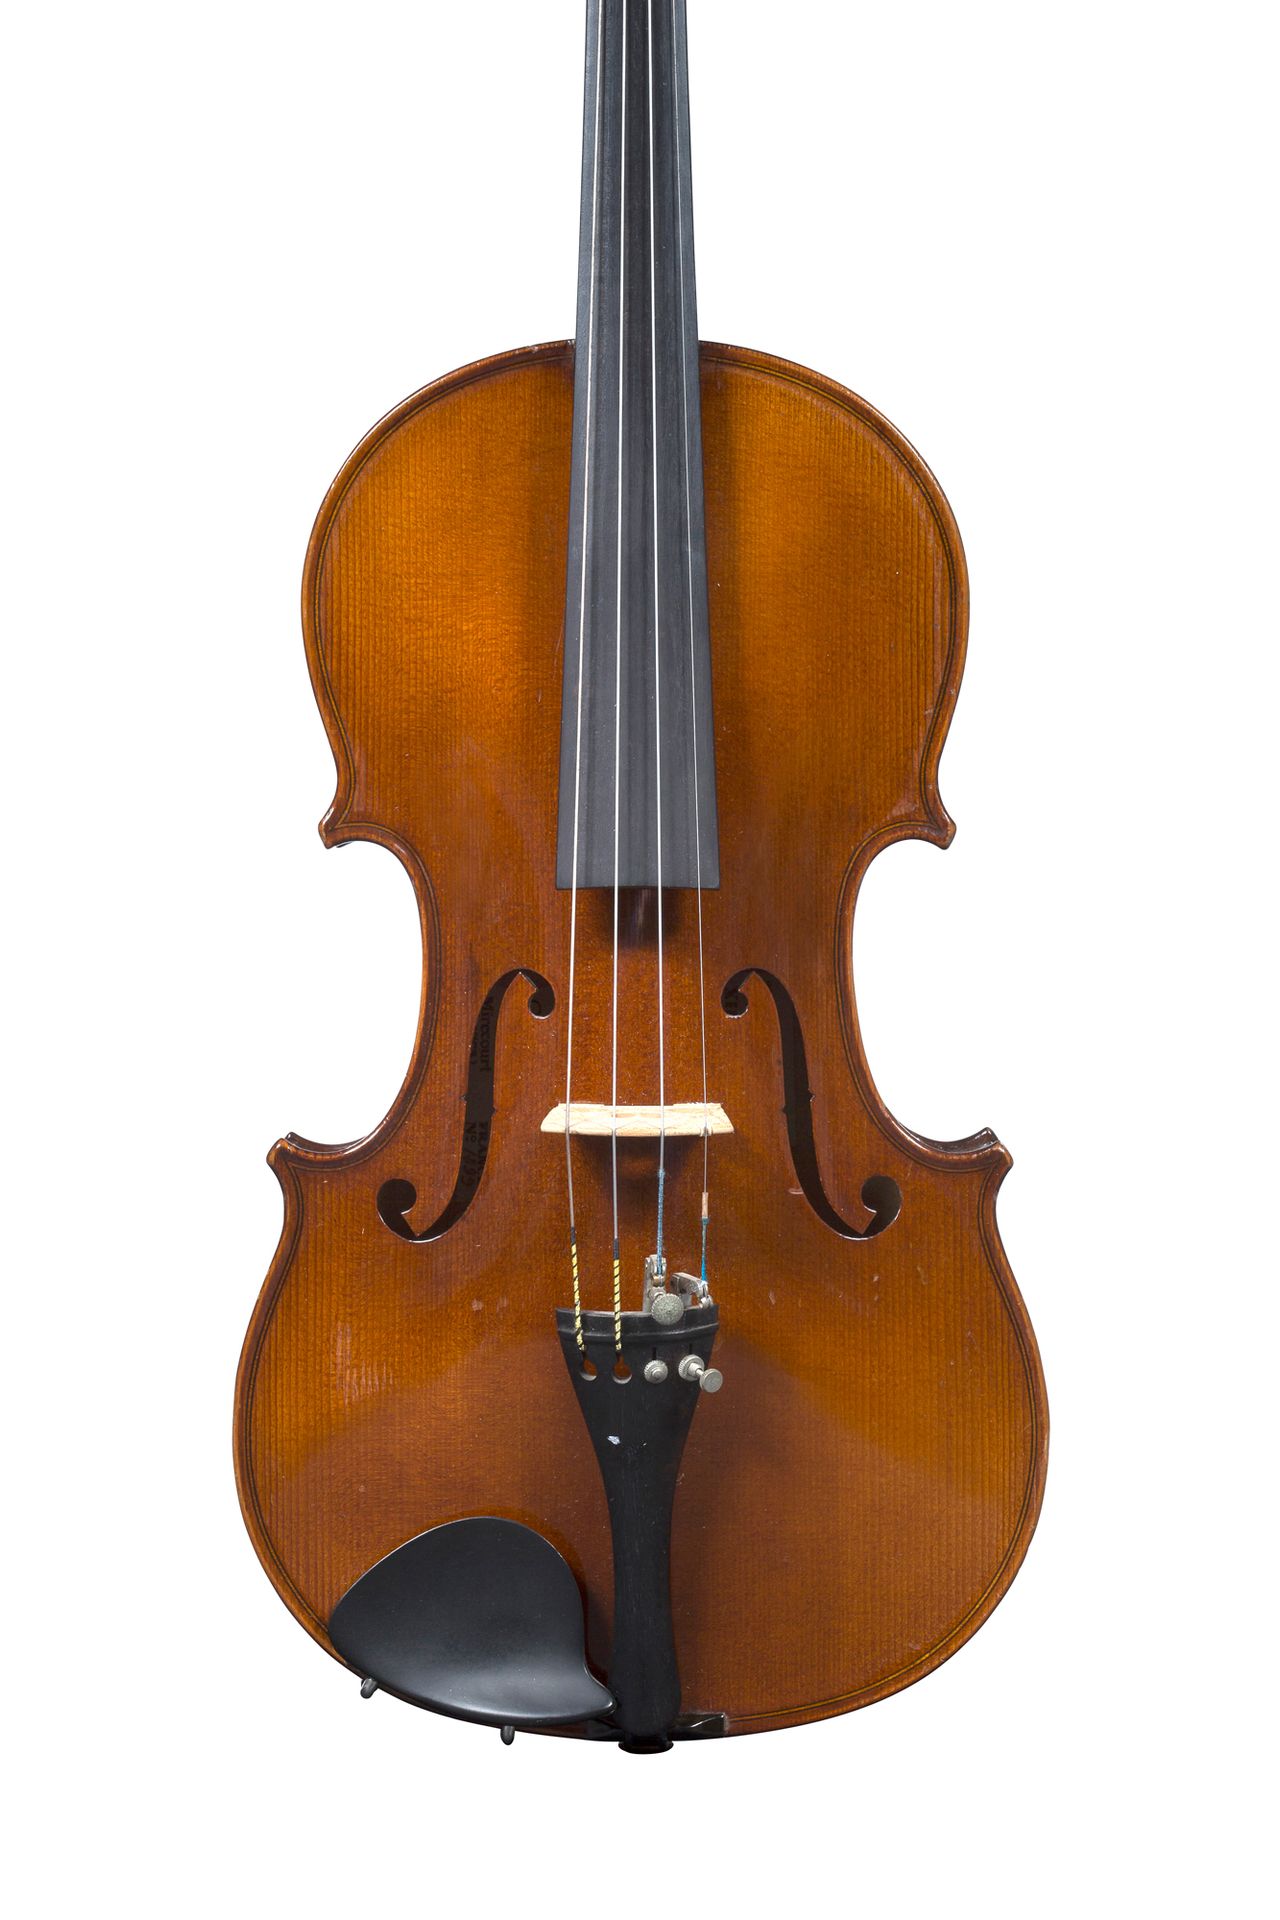 Null 20世纪在Mirecourt制造的小提琴
在Marc Laberte的指导下完成
琴尾下的小断裂
状态良好
随时可以演奏 
背面有357毫米